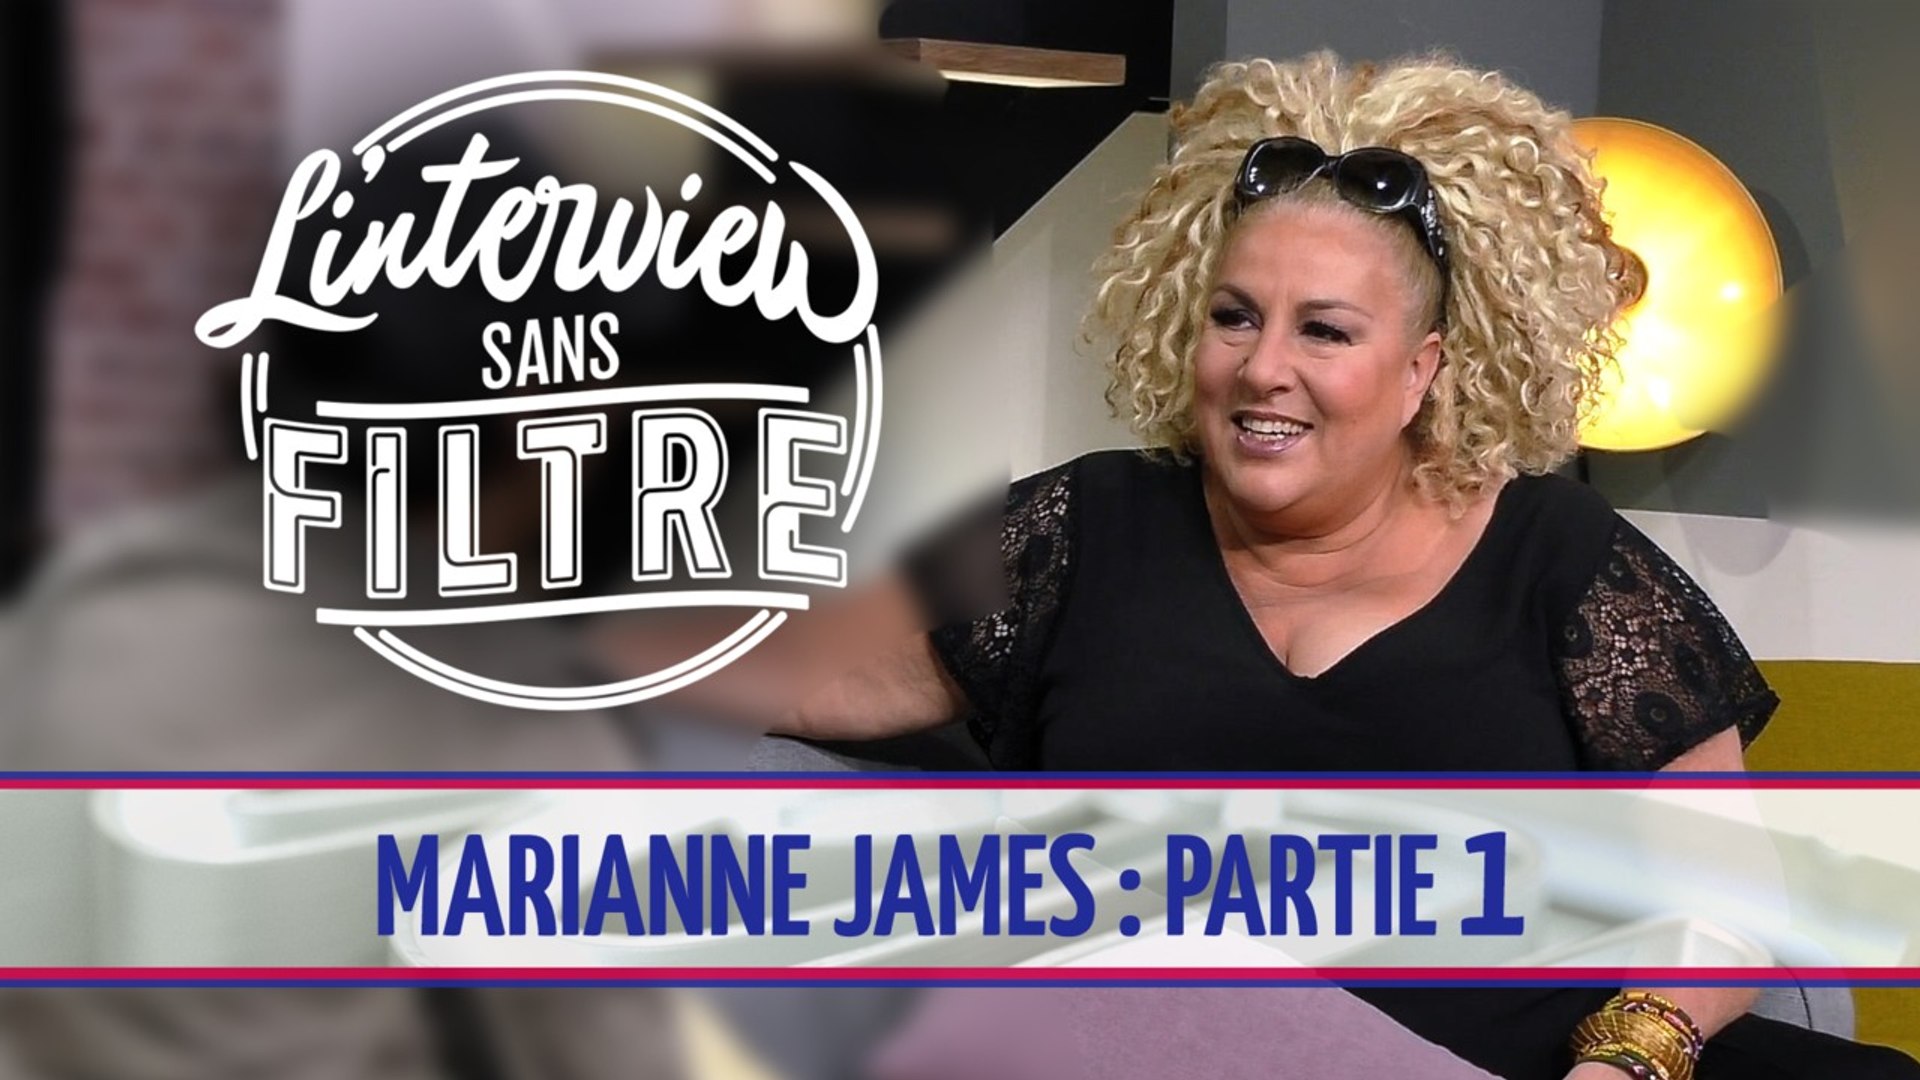 Marianne James : "On me reprocherait de perdre beaucoup de poids..." -  Vidéo Dailymotion